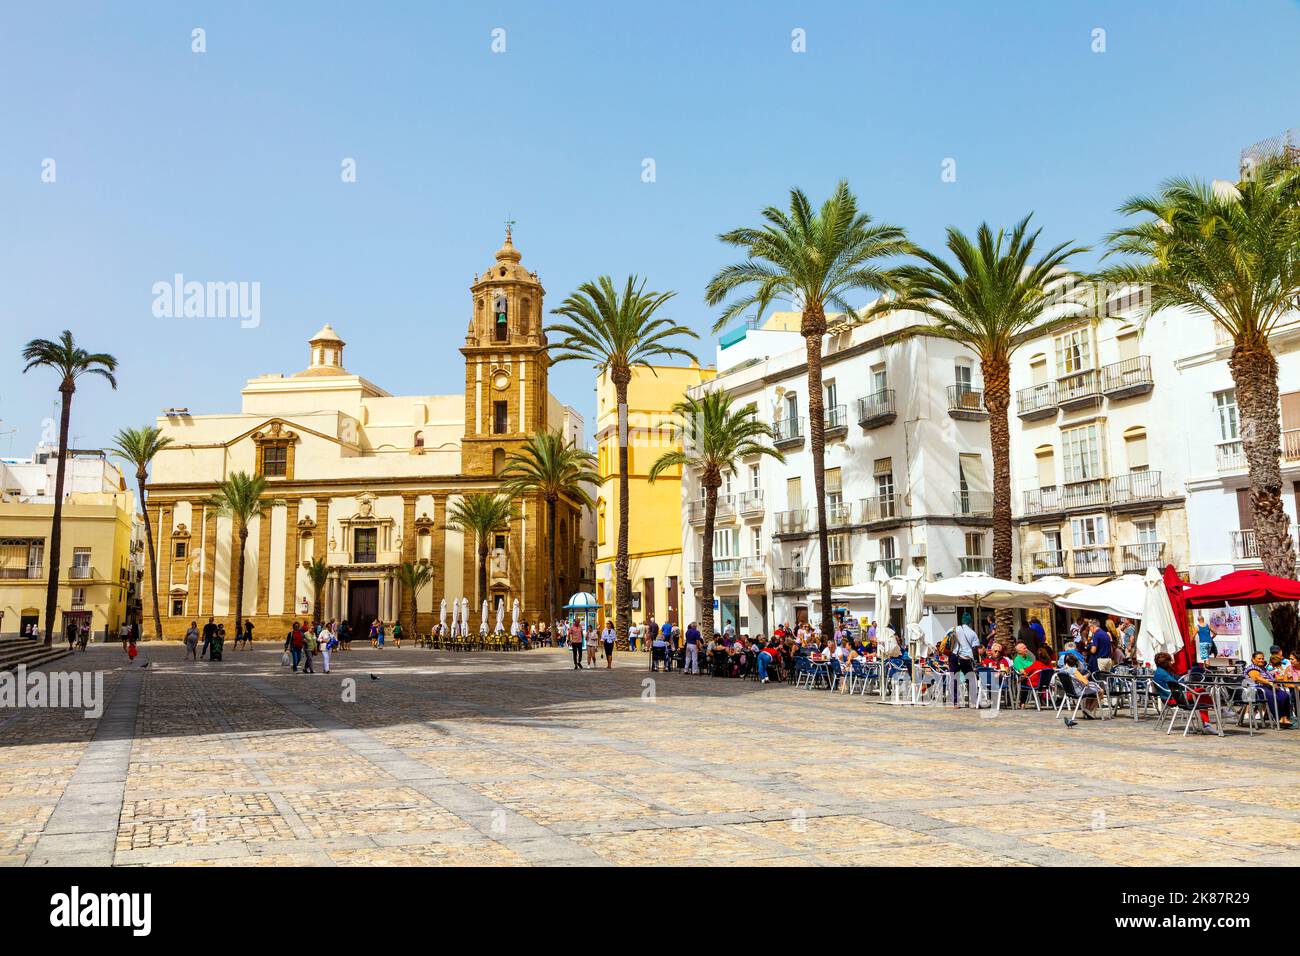 Buildings and Iglesia de Santiago Apóstol around Plaza de la Catedral (Cathedral Square) in Cadiz, Andalusia, Spain Stock Photo